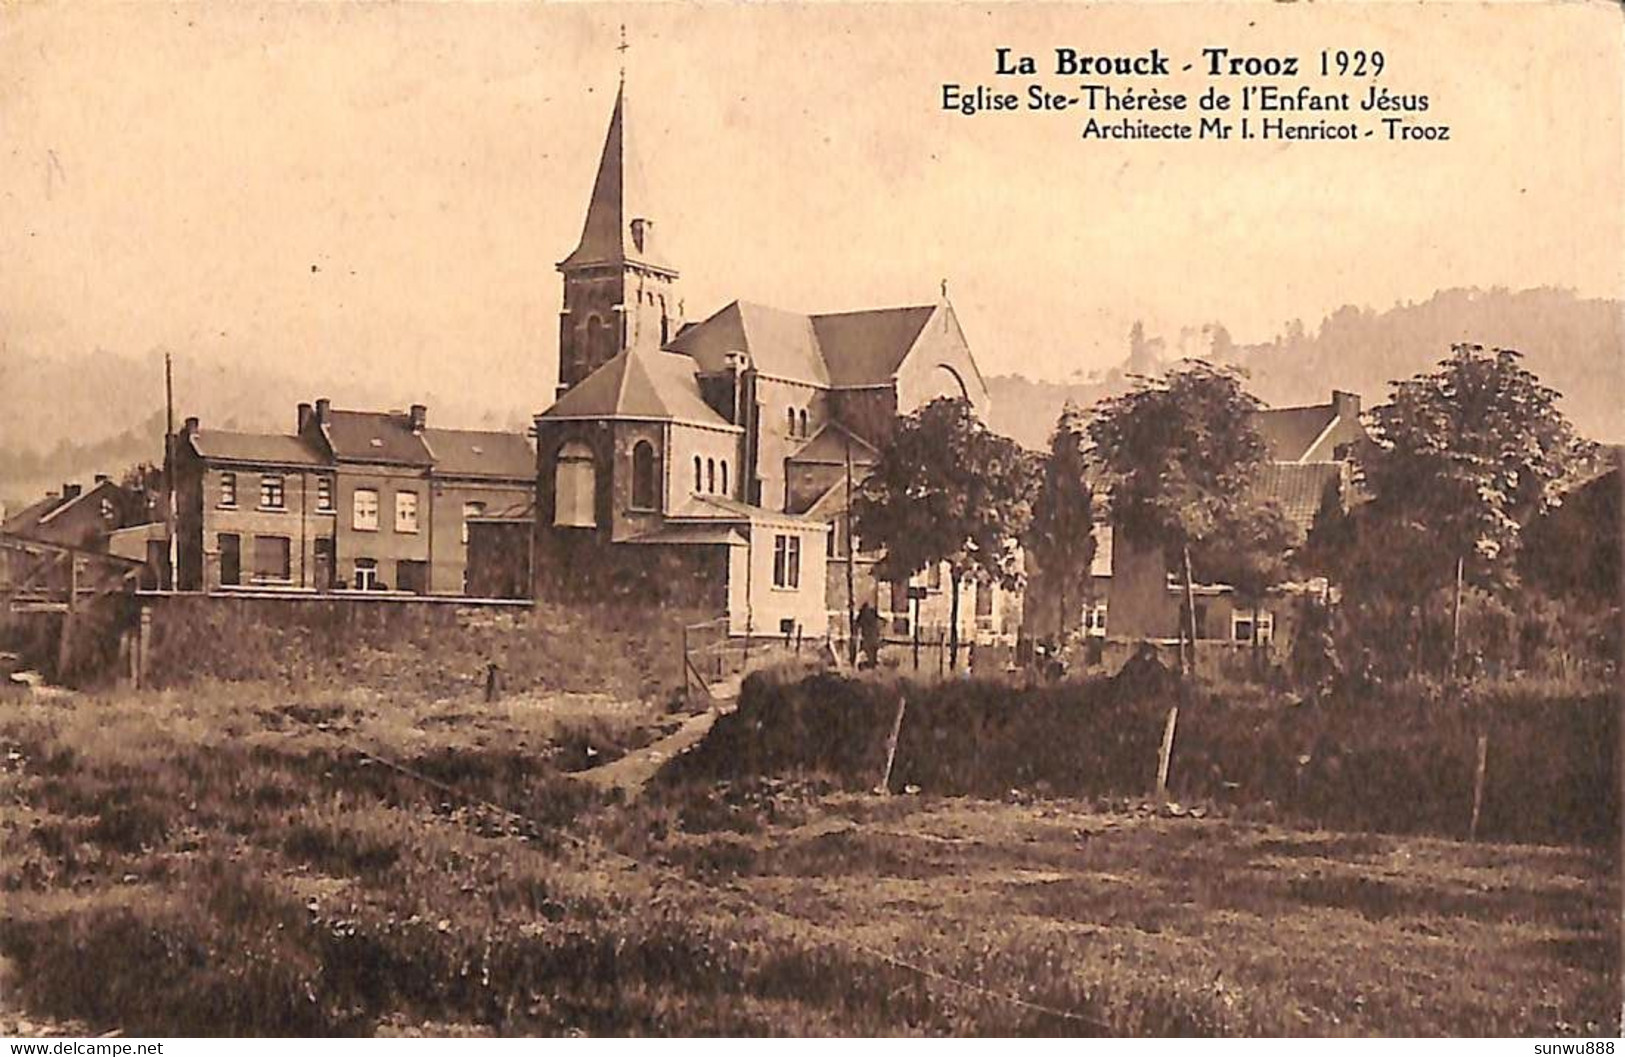 La Brouck - Trooz - Eglise Ste-Thérèse (1929, Photo Belge Lumière) - Trooz